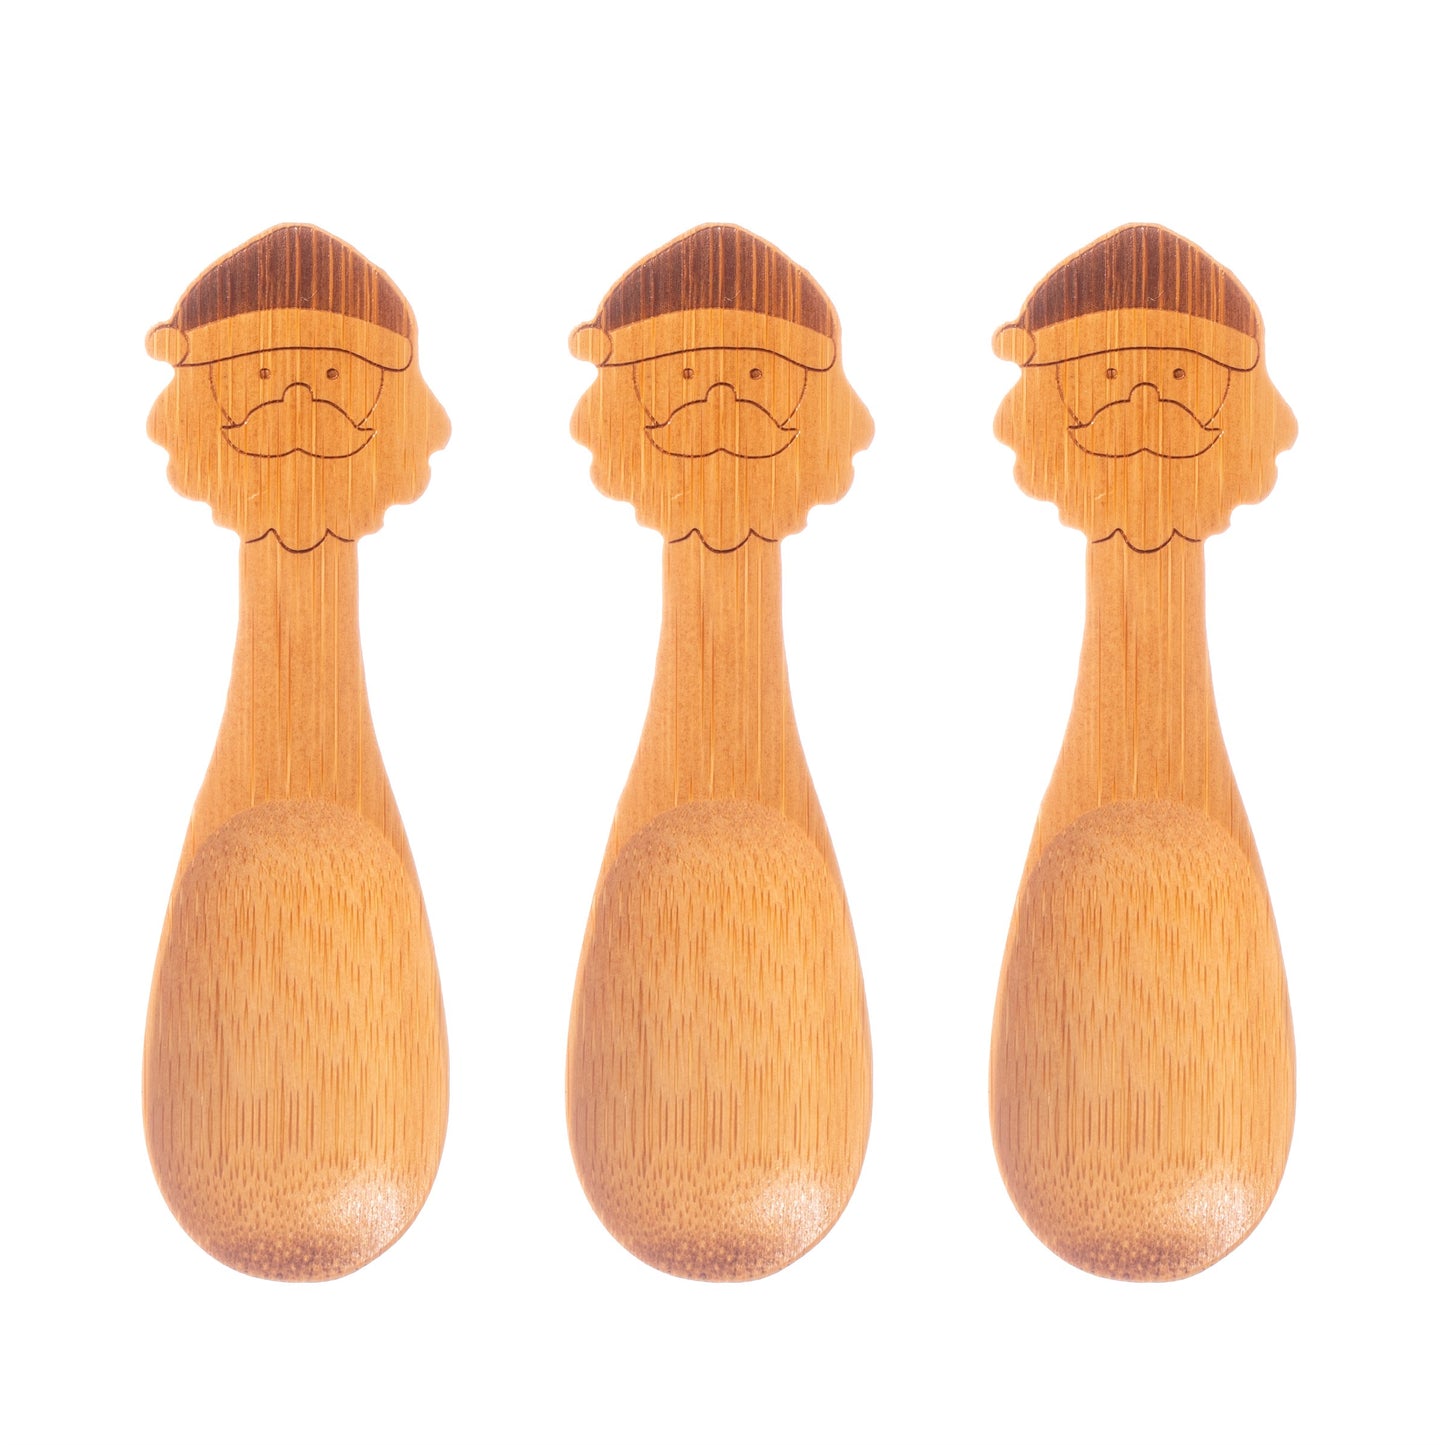 Santa Bamboo Spoons Set of 3